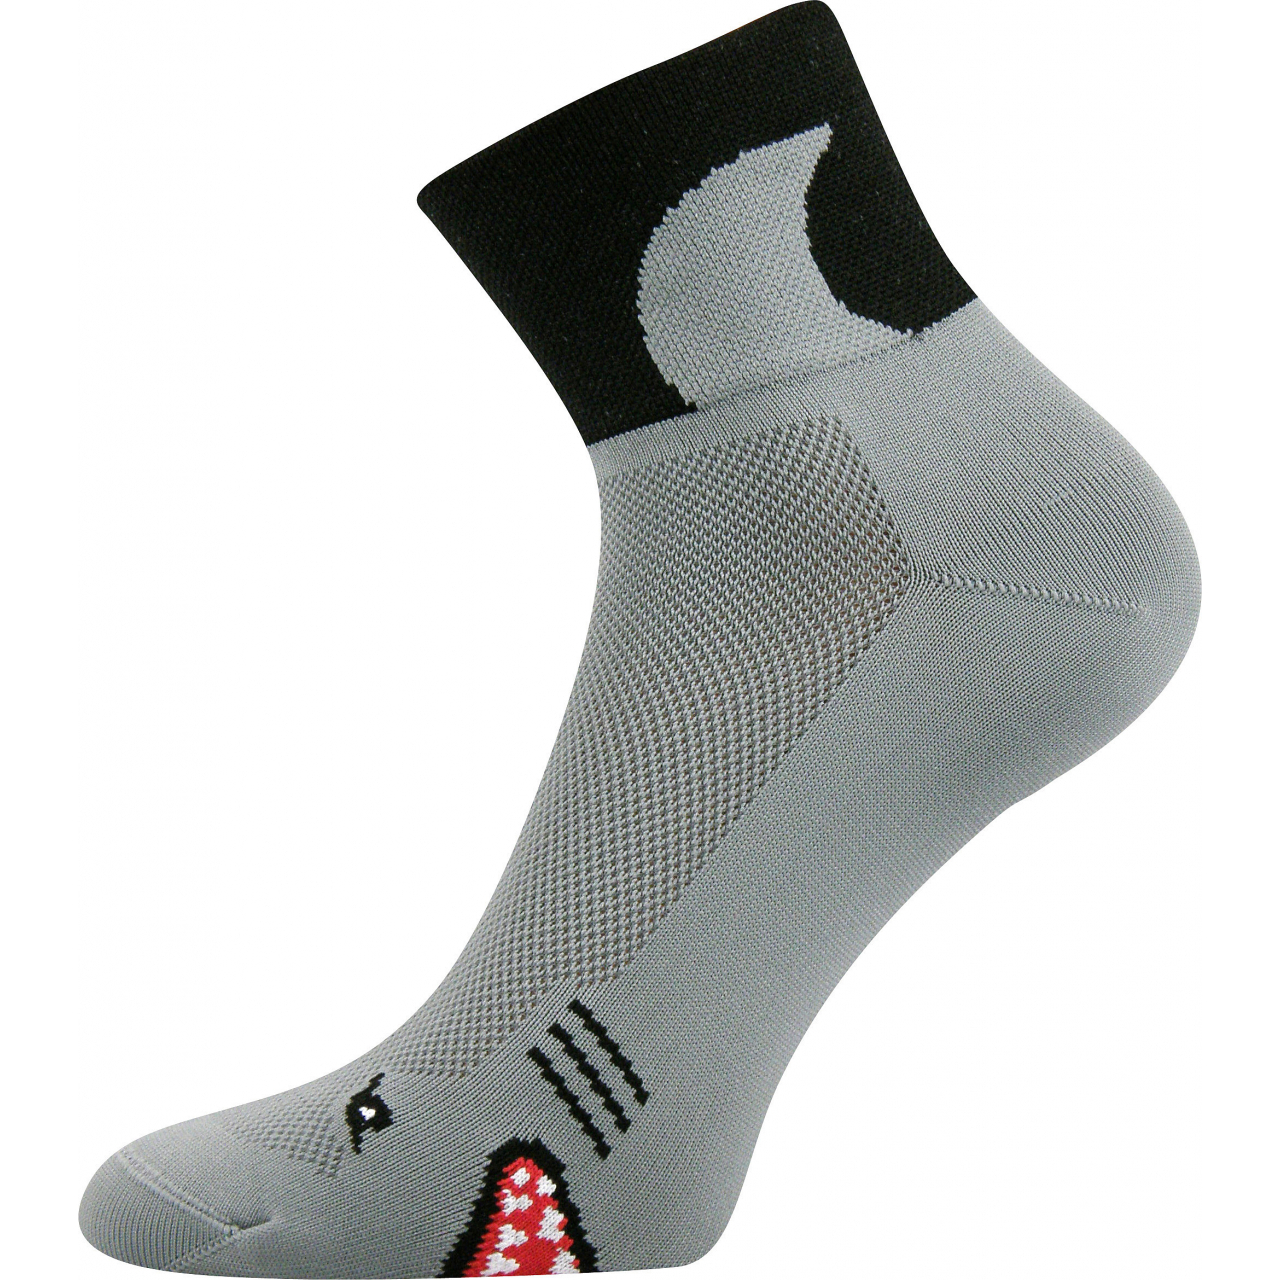 Ponožky sportovní unisex Voxx Ralf X Žraloci - šedé-černé, 39-42